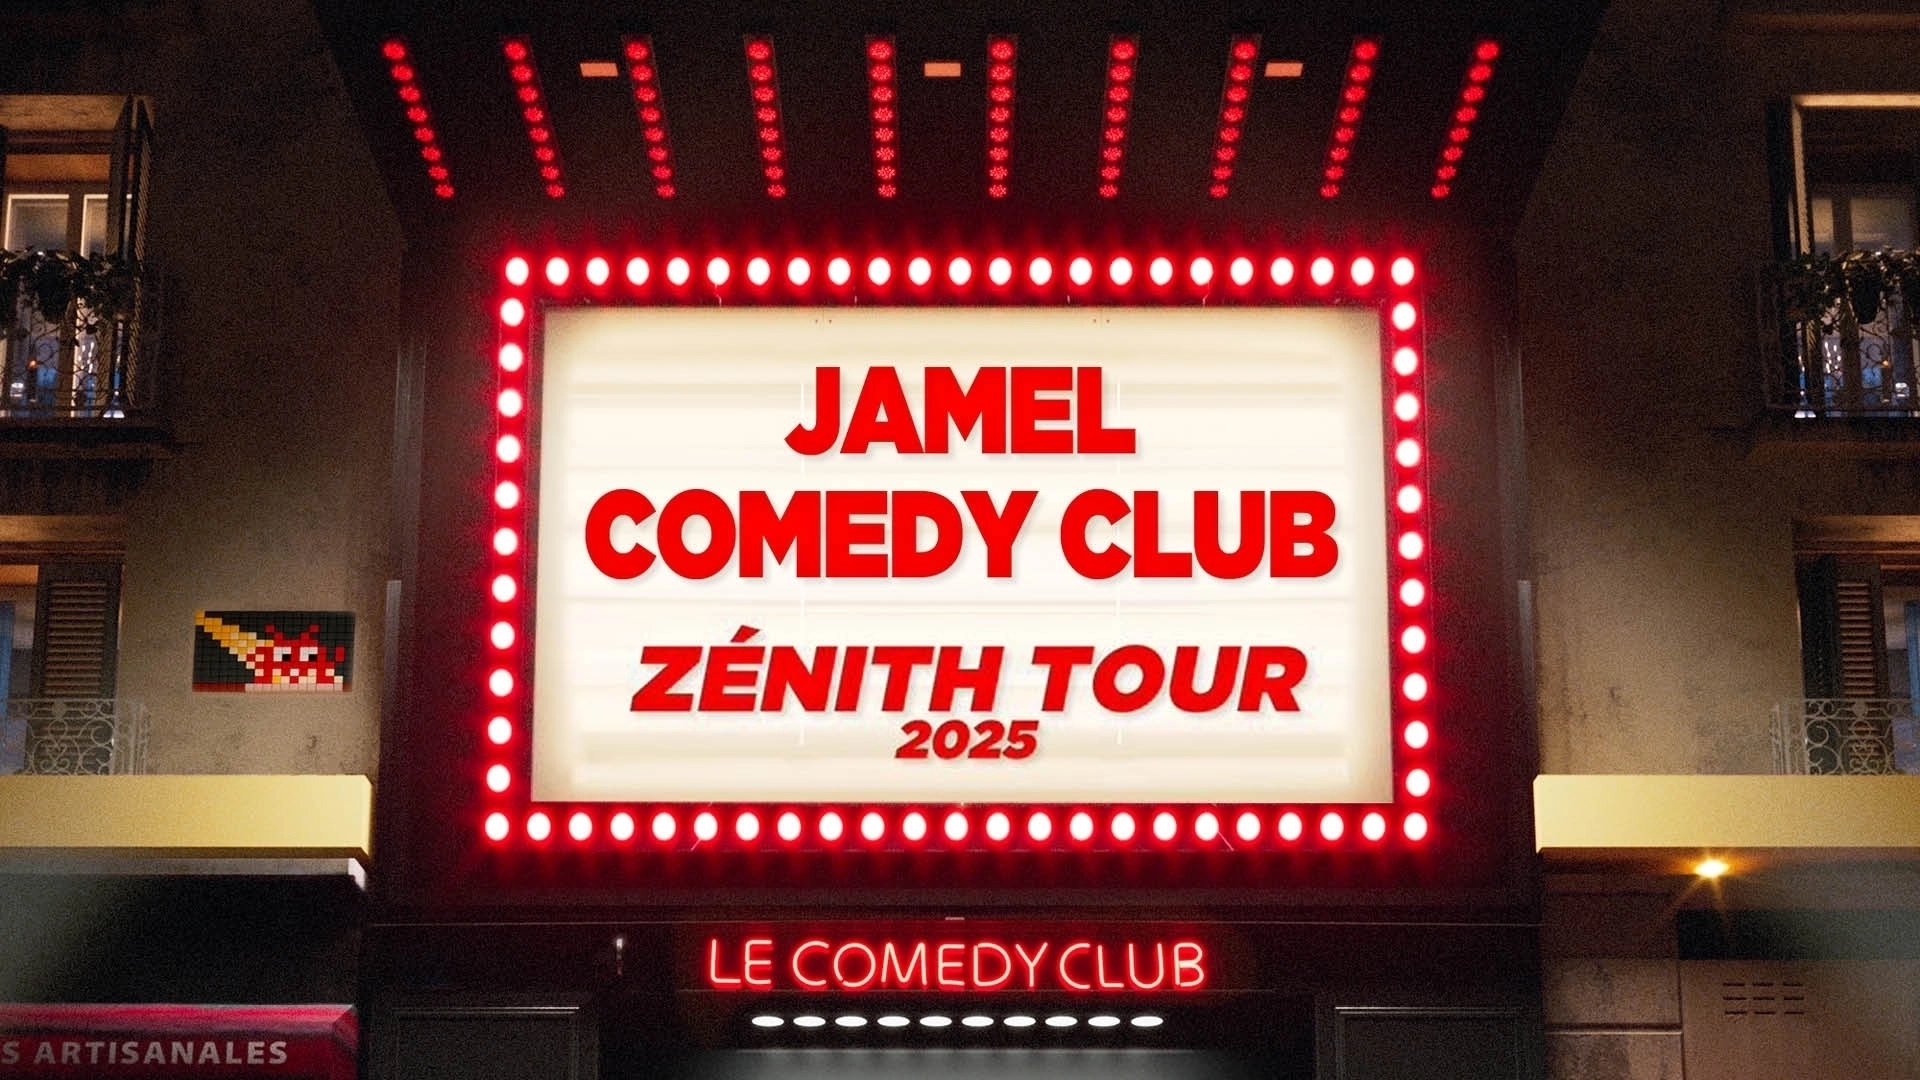 Jamel Comedy Club Zenith Tour 2025 at Zenith Strasbourg Tickets